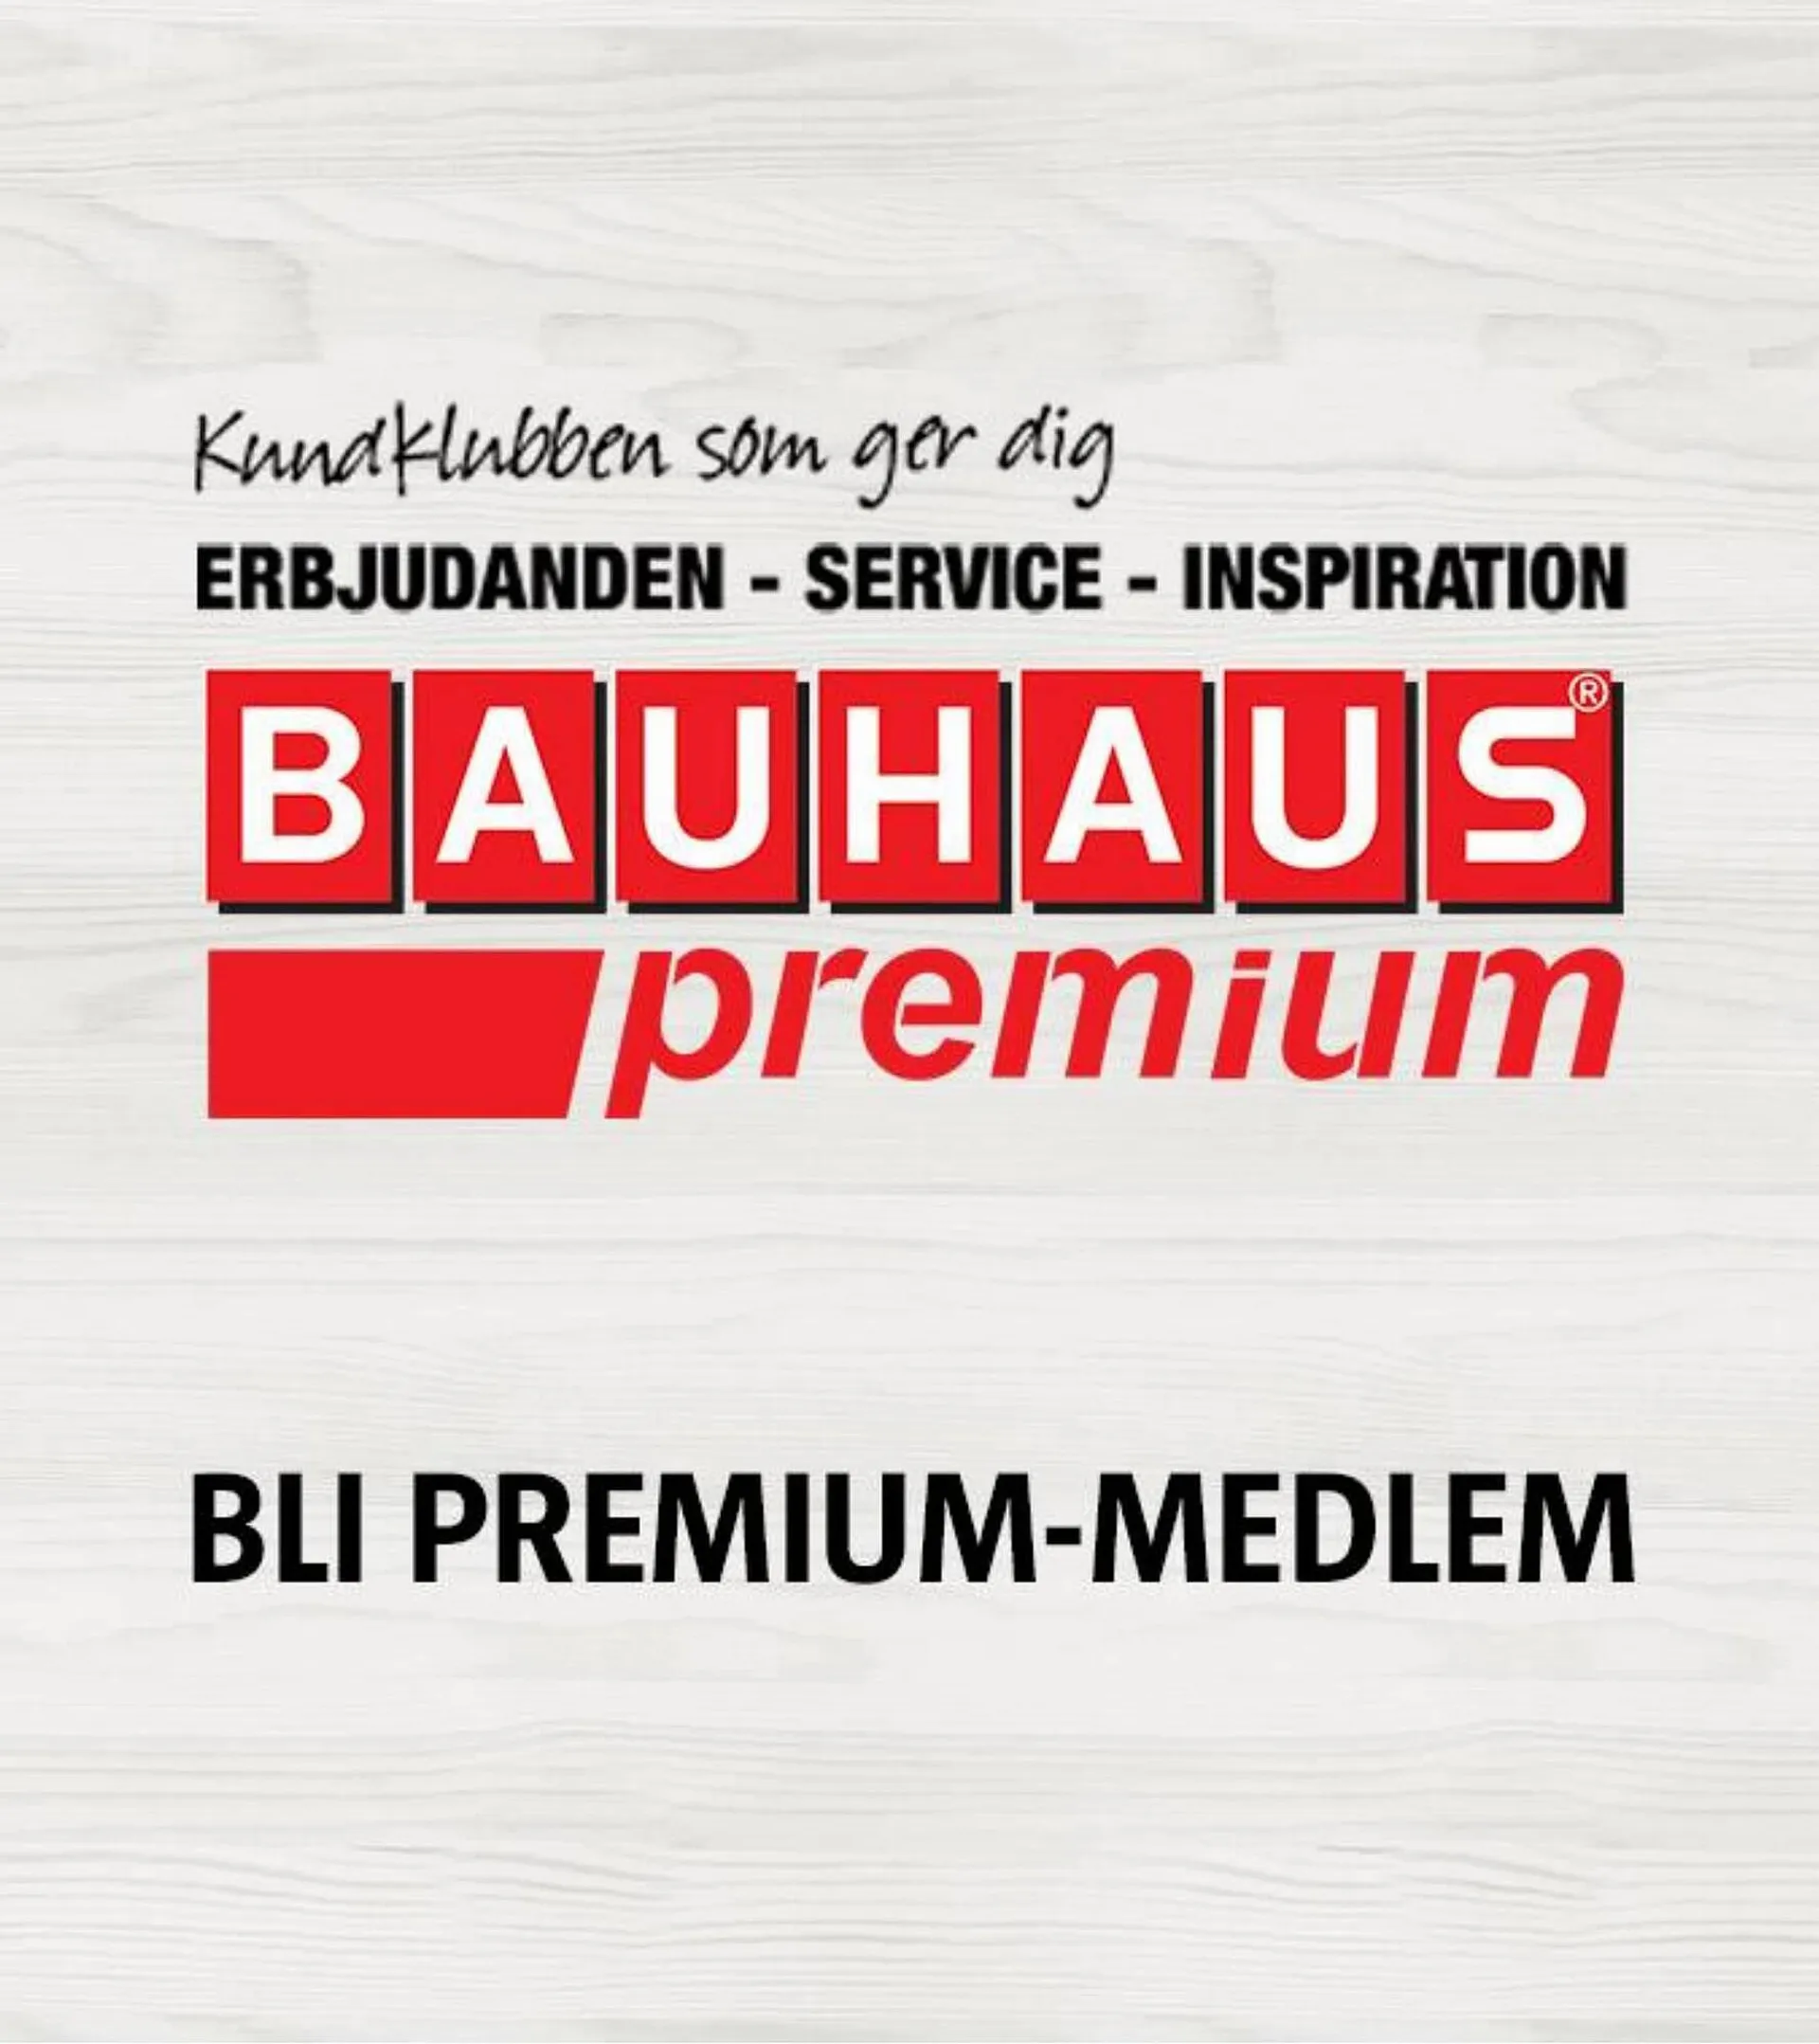 Bauhaus reklamblad - 23